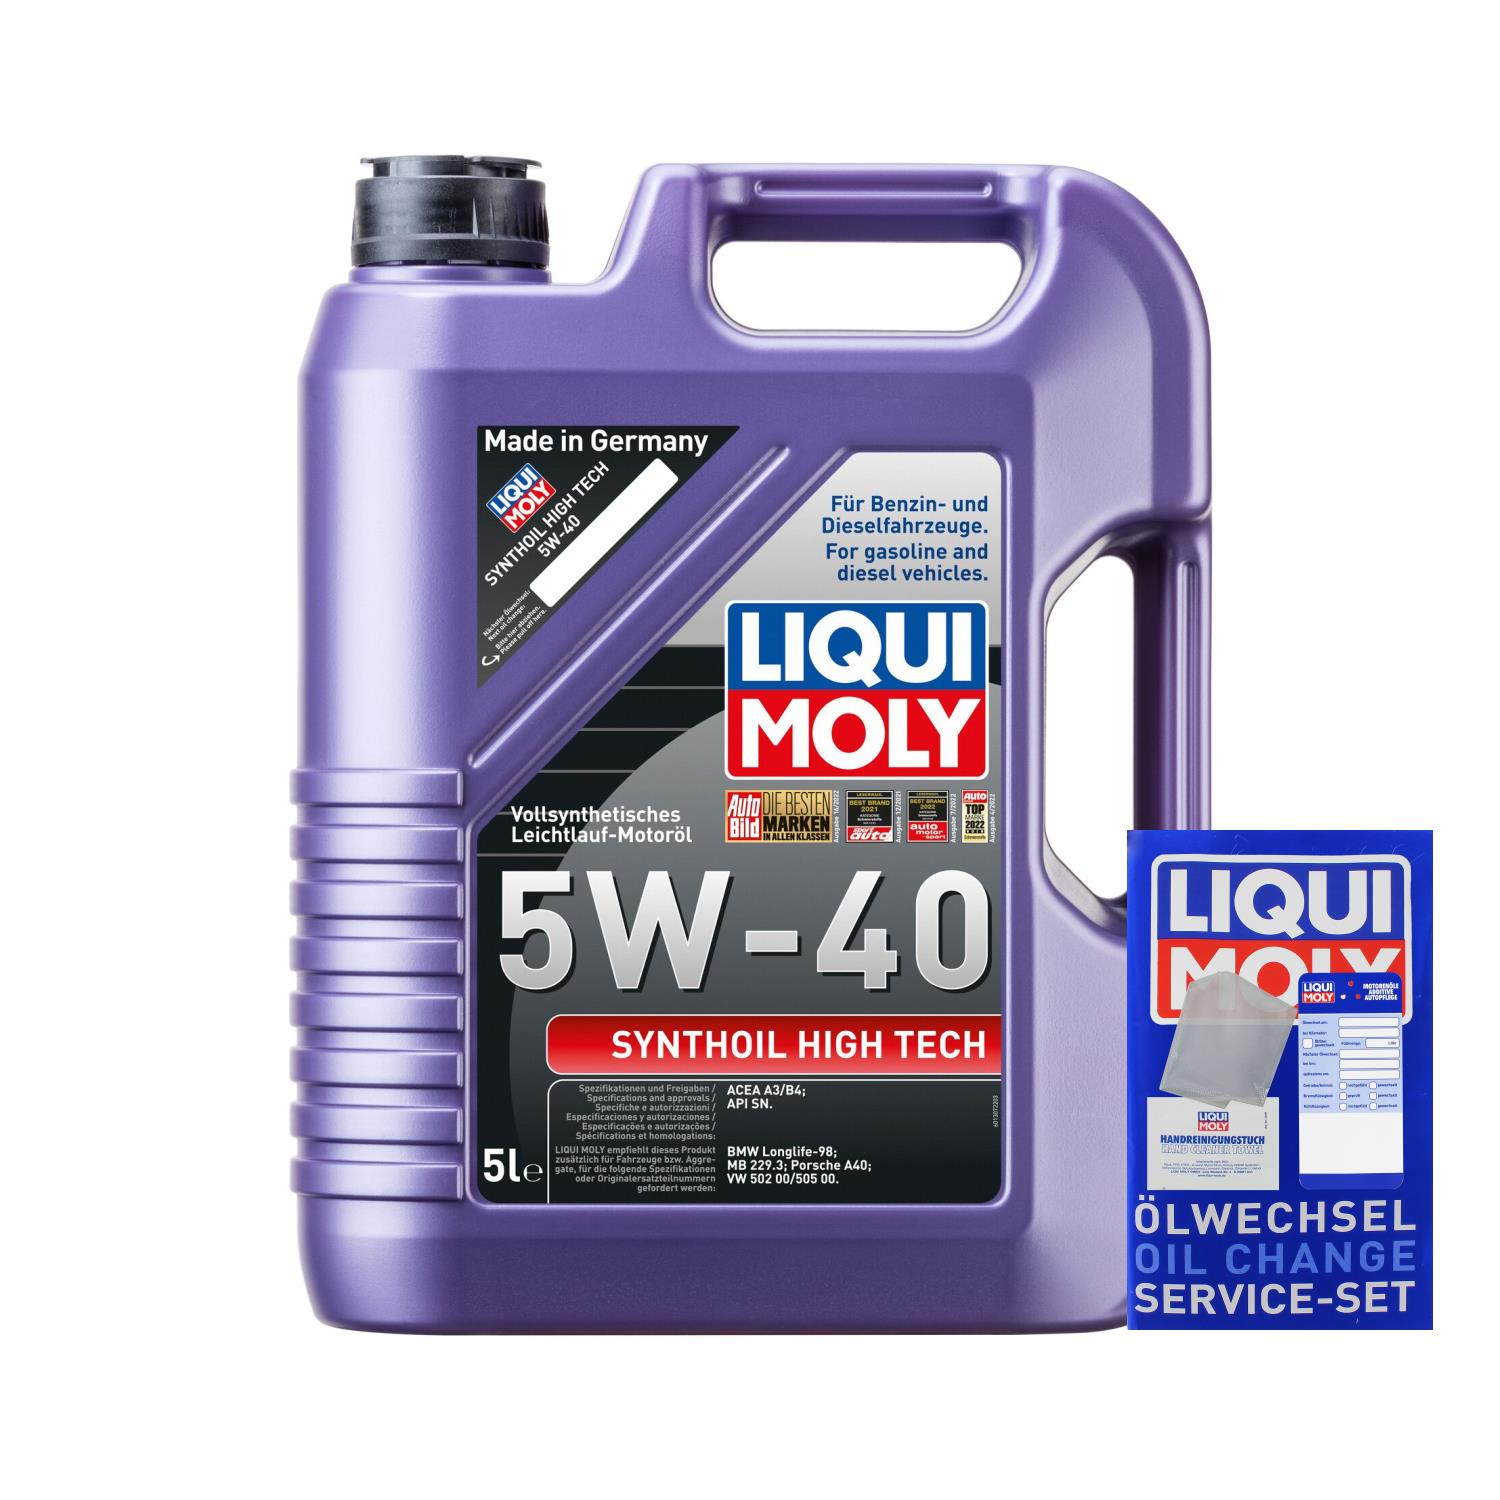 5L Liqui Moly Synthoil High Tech 5W-40 Vollsynthetisch Leichtlauföl Motoröl